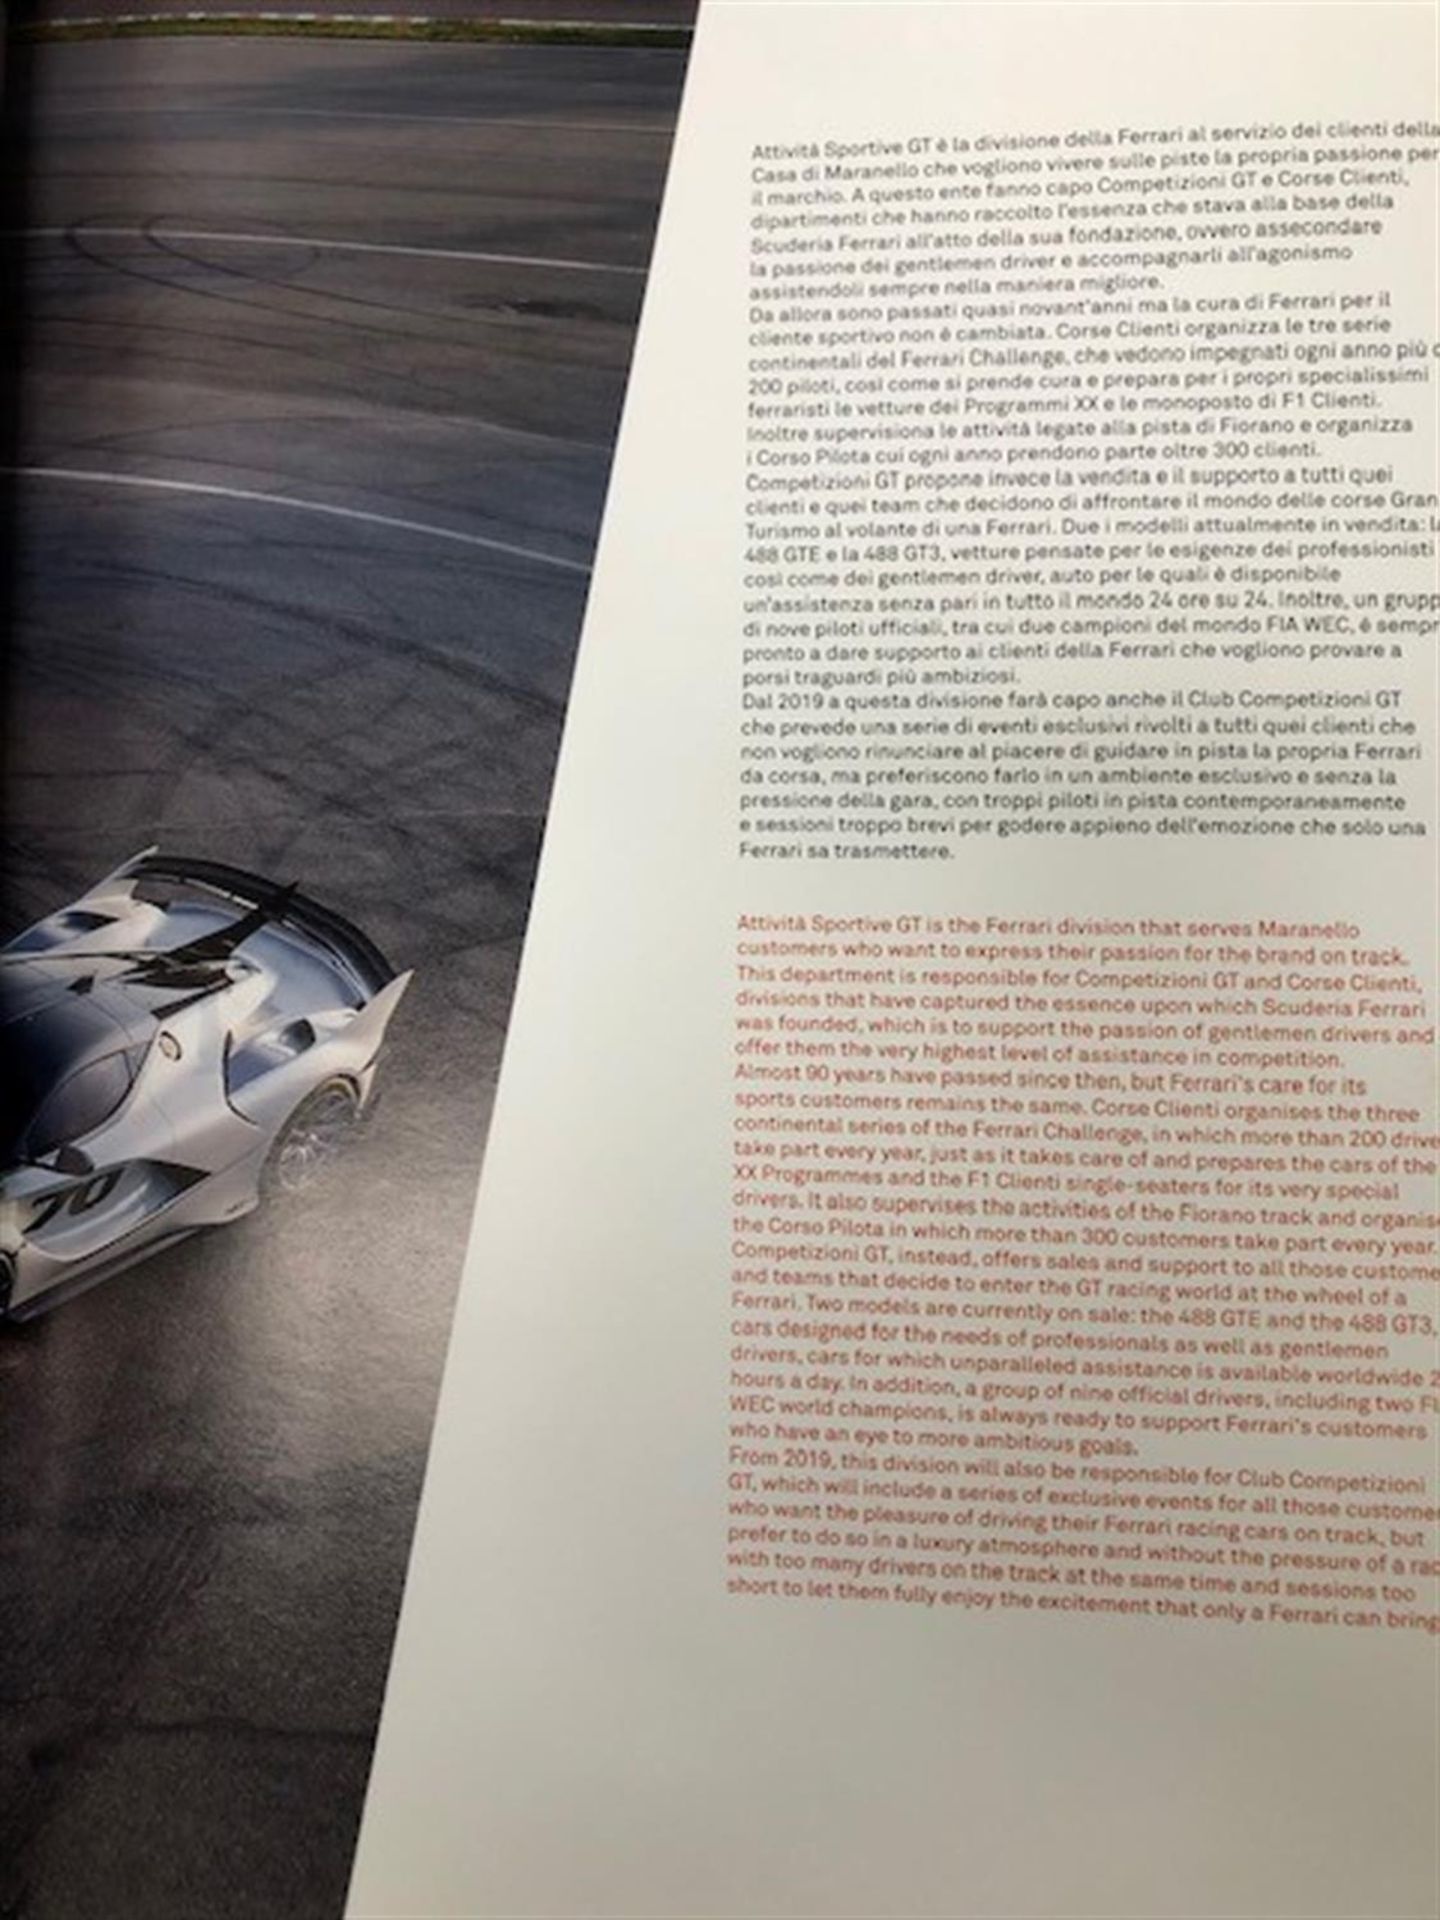 Book; Ferrari Racing Activities 2018 - Image 4 of 4